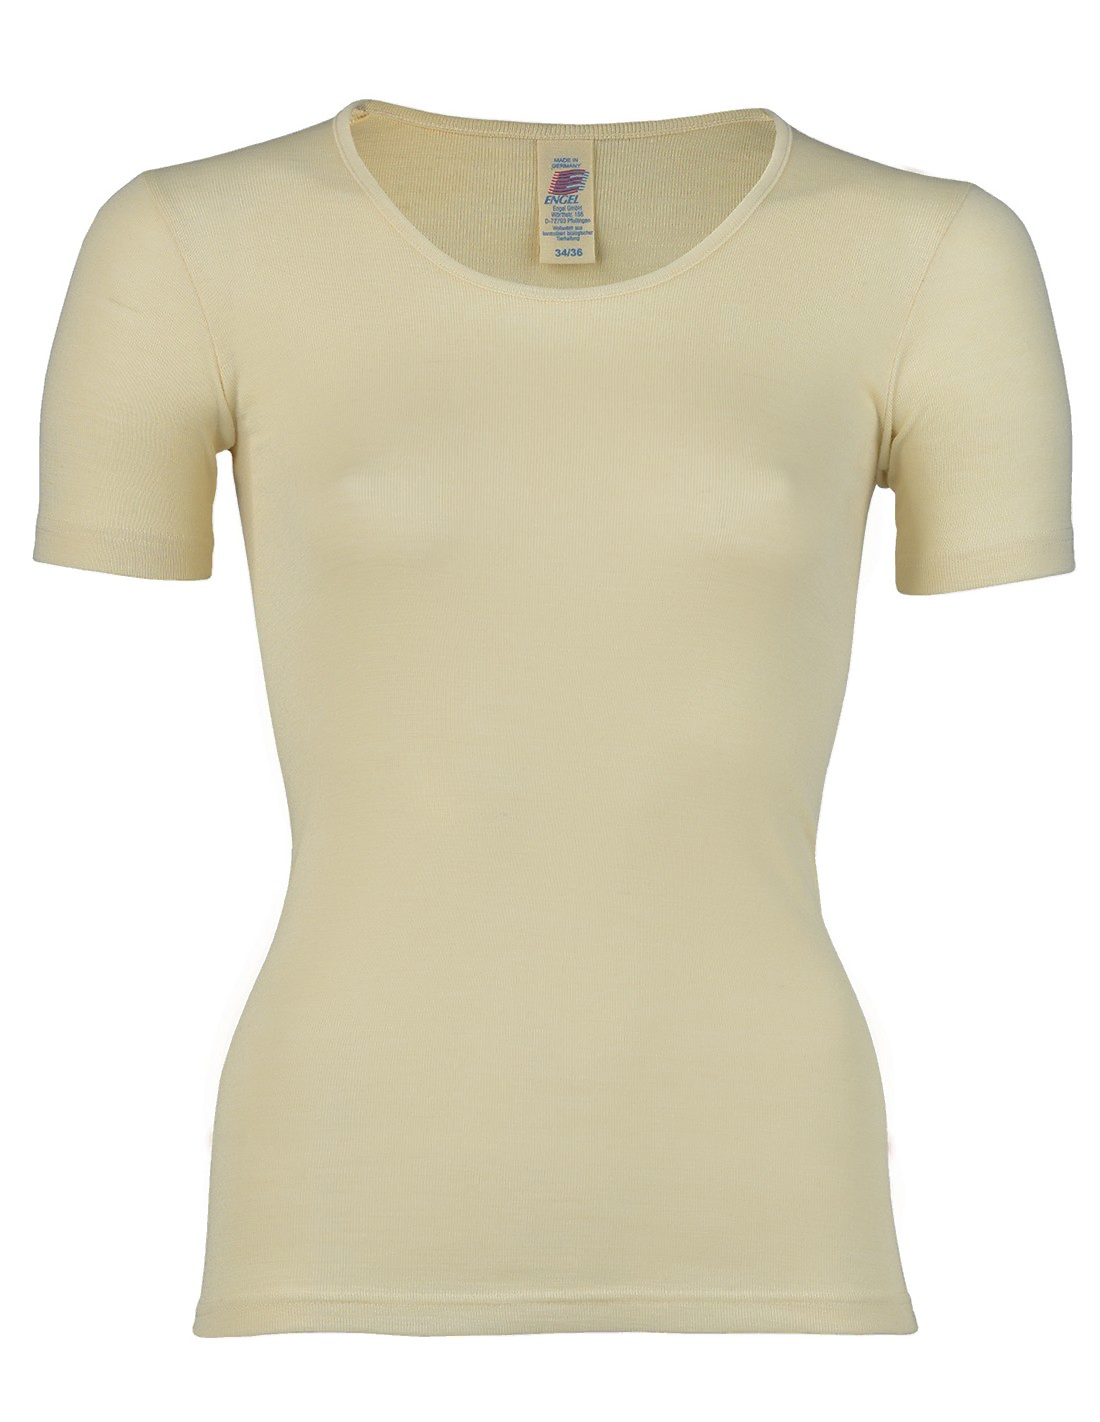 Image of Dames T-Shirt Zijde Wol Engel Natur, Kleur Gebroken wit, Maat 46/48 - Extra Large